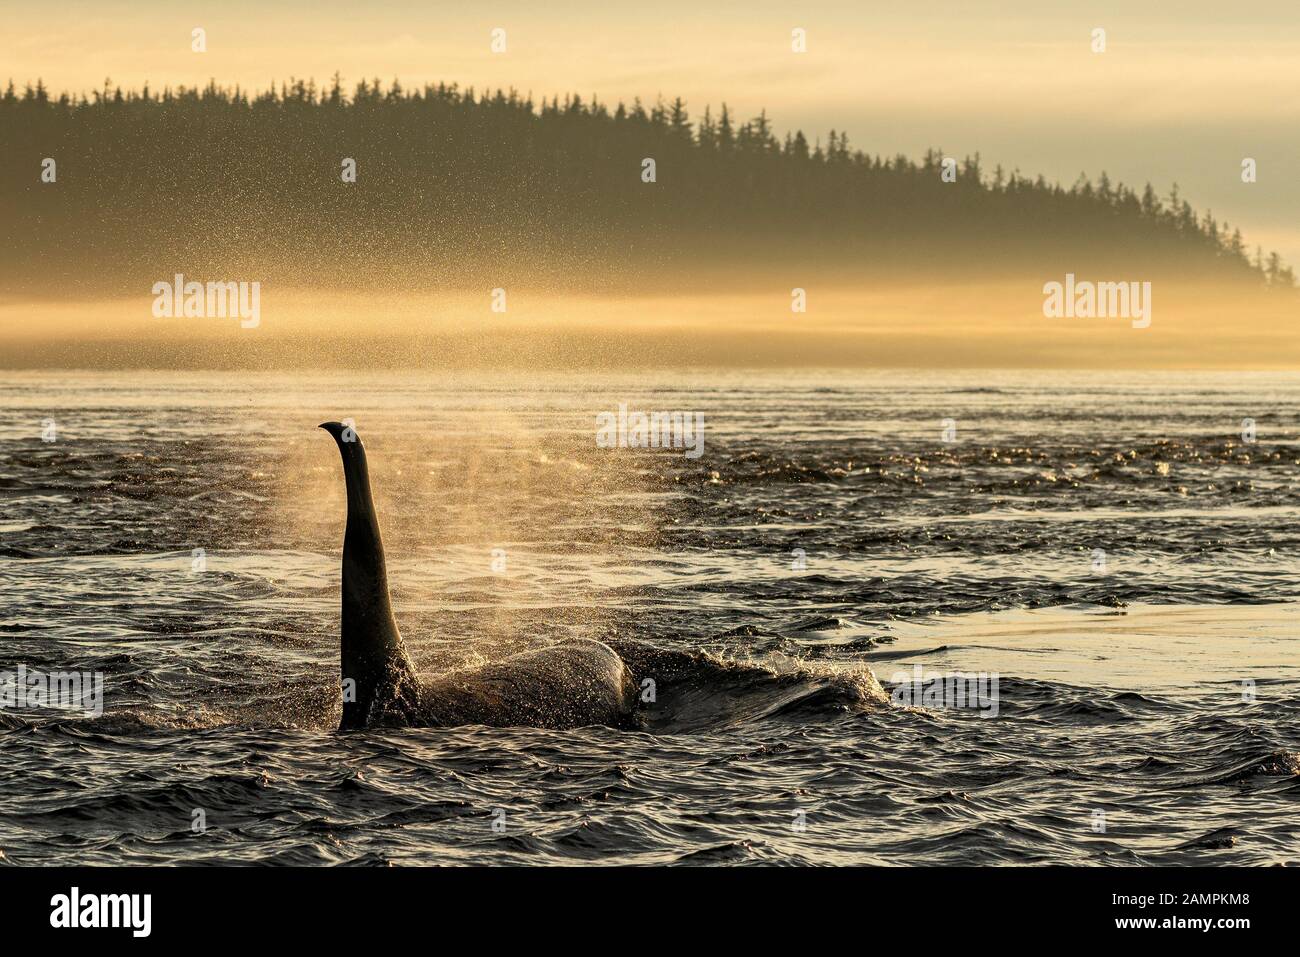 A61, épaulards résidents du nord, Orcinus orca, peu après le lever du soleil dans le détroit de Johnstone, territoire des Premières nations, Colombie-Britannique, Canada. Banque D'Images